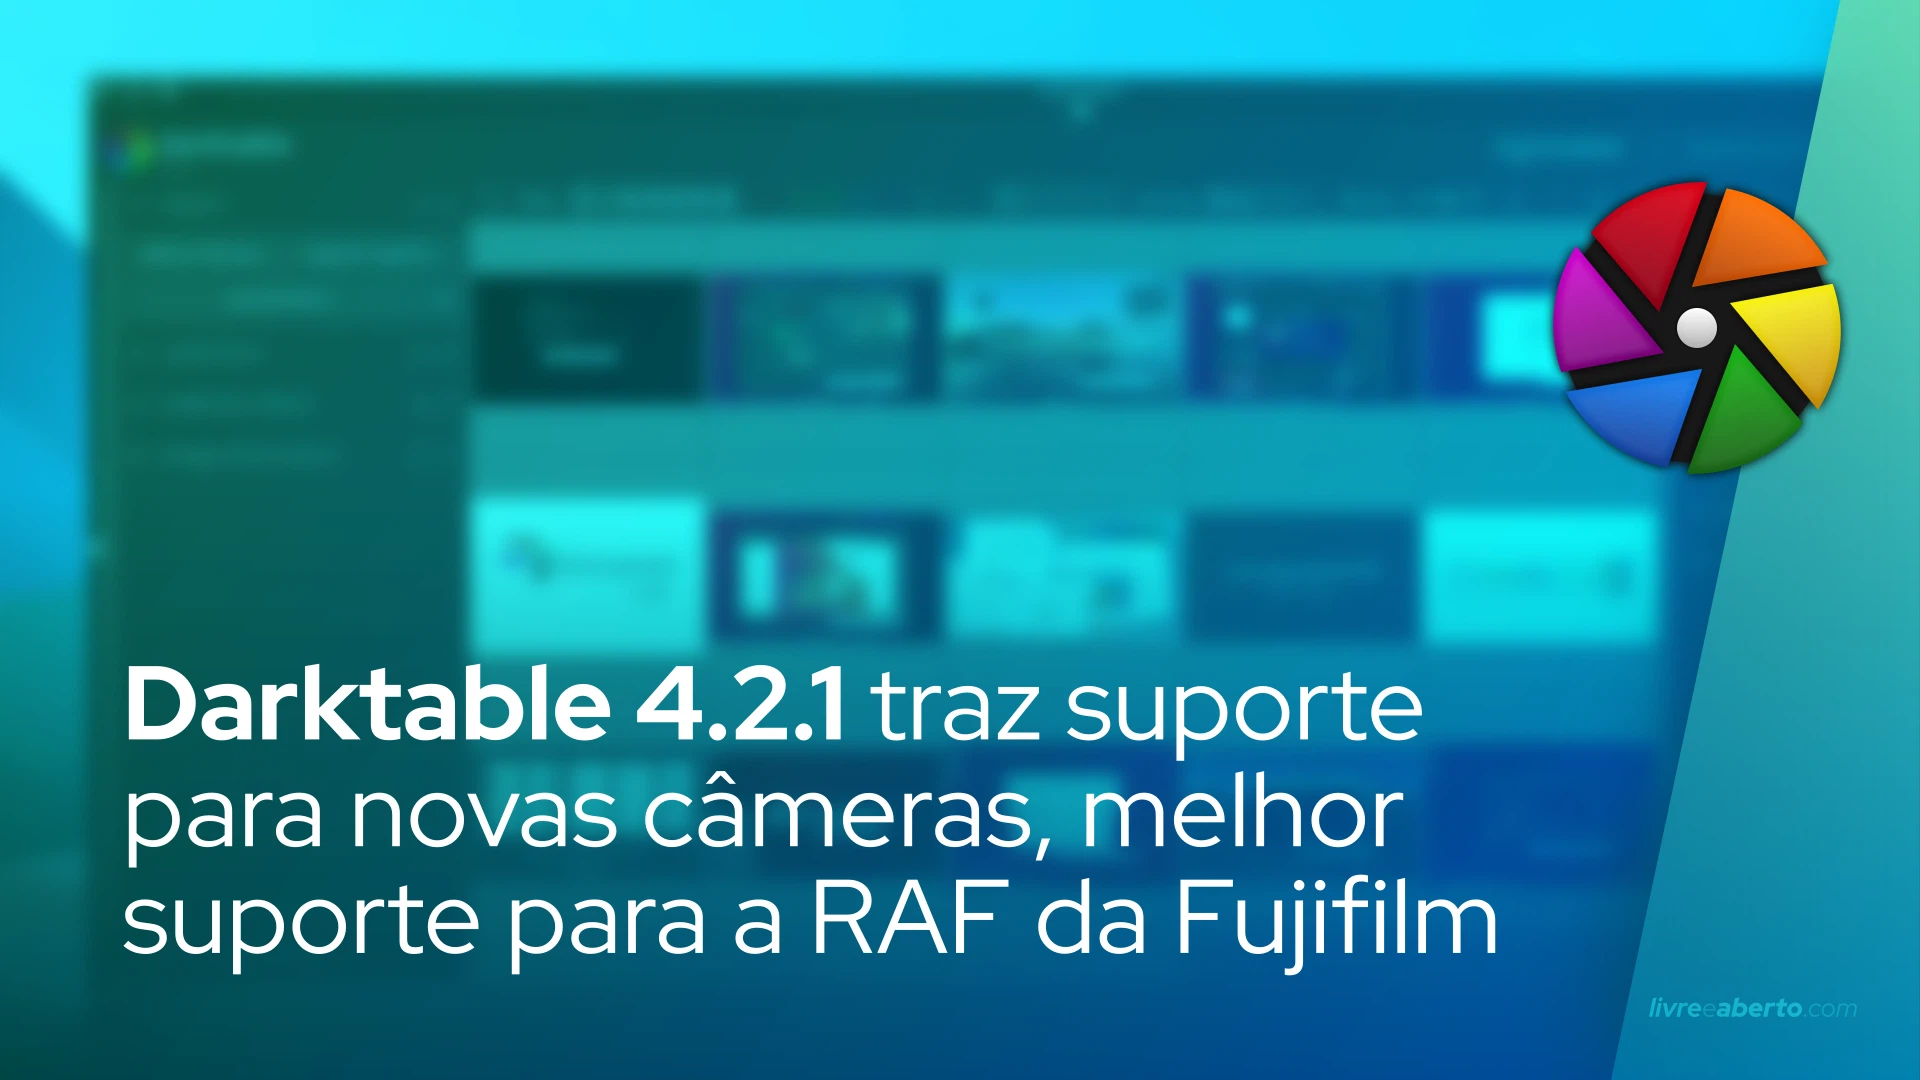 darktable 4.2.1 traz suporte para novas câmeras, melhor suporte para a RAF da Fujifilm